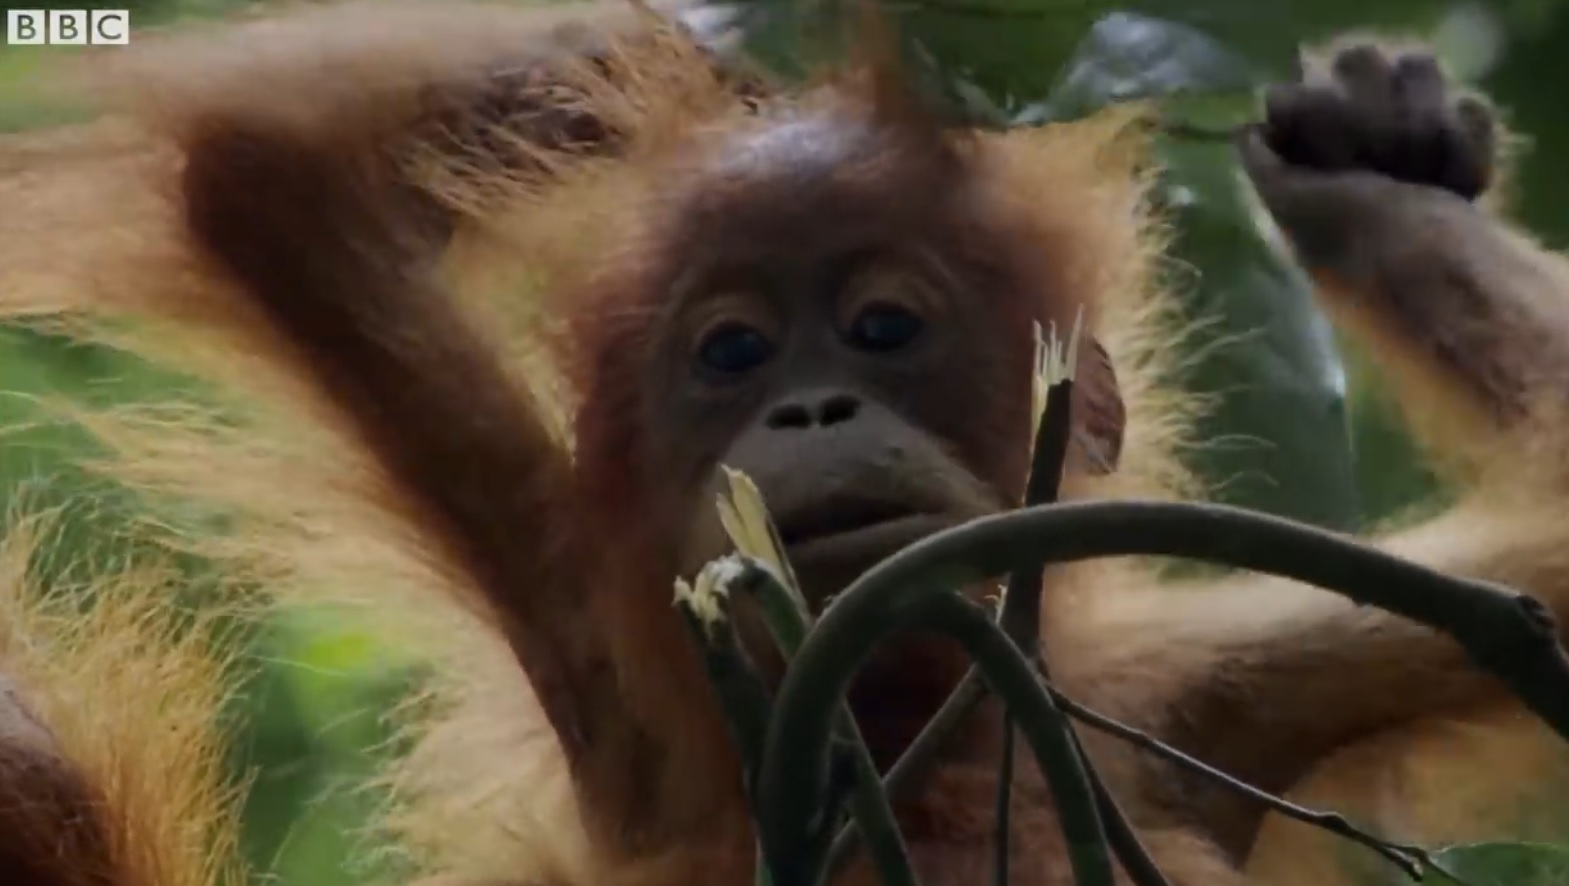 Mother Orangutan Teaching Daugter